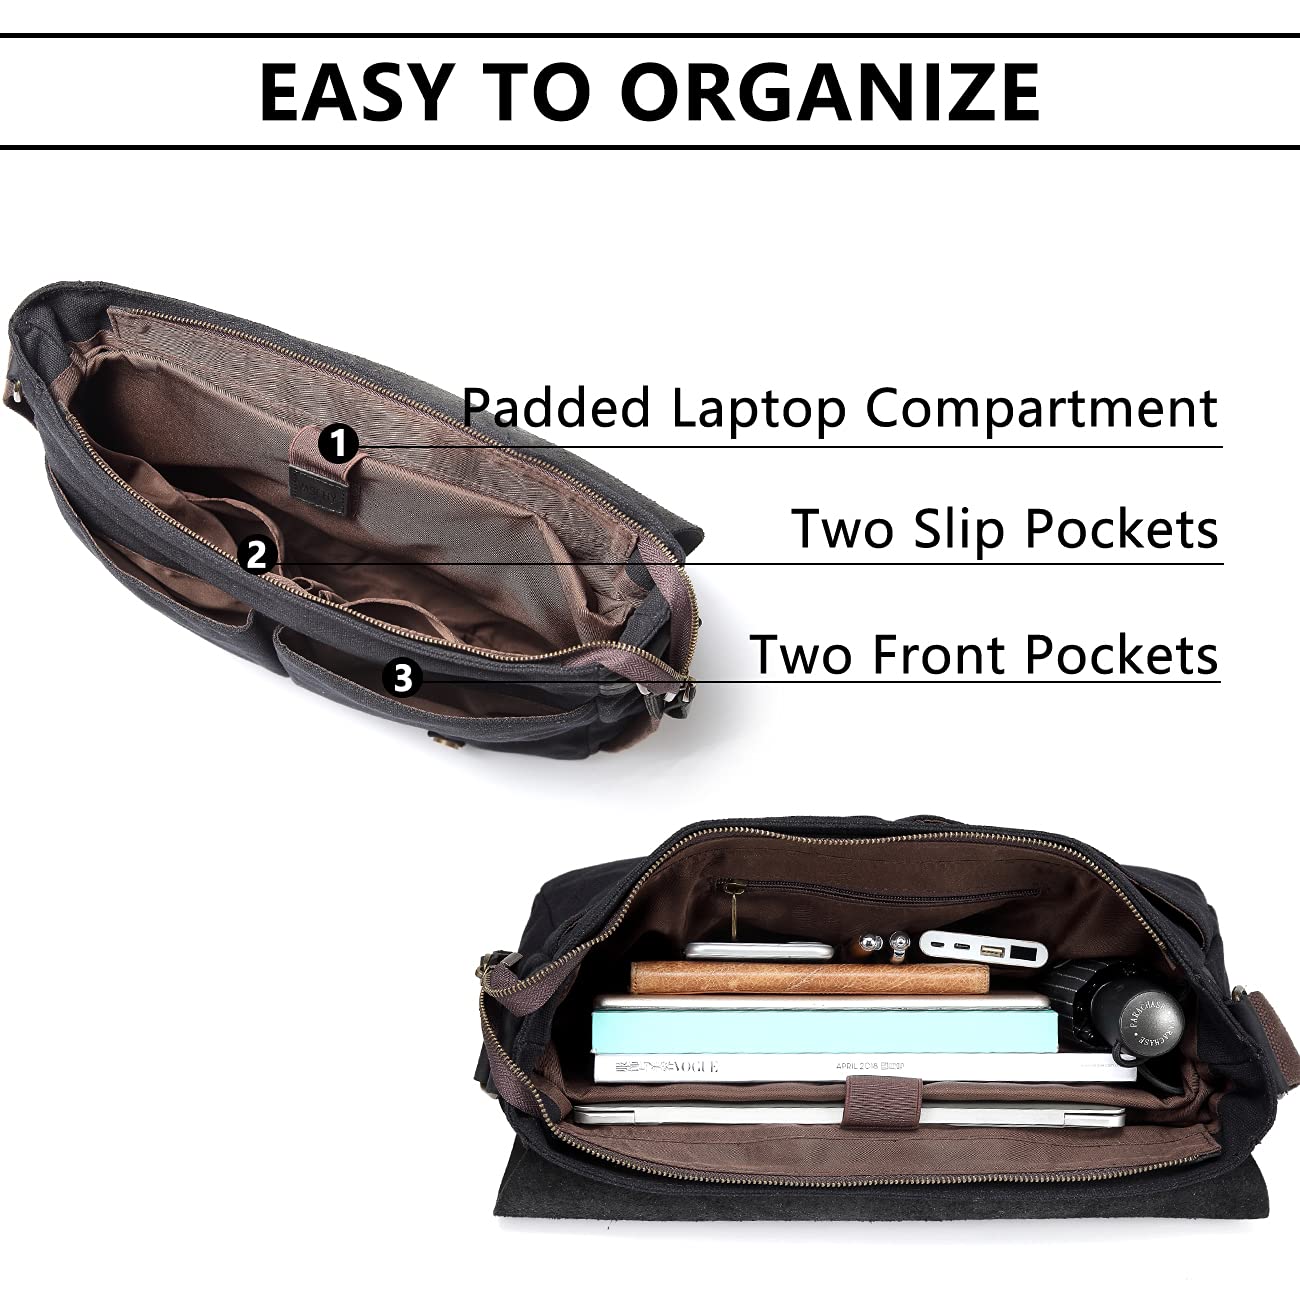 VASCHY Black Leather Canvas Messenger Bag for Men, Vintage Satchel 15.6 inch Laptop Business Briefcase Shoulder Bag with Top Lift Handle